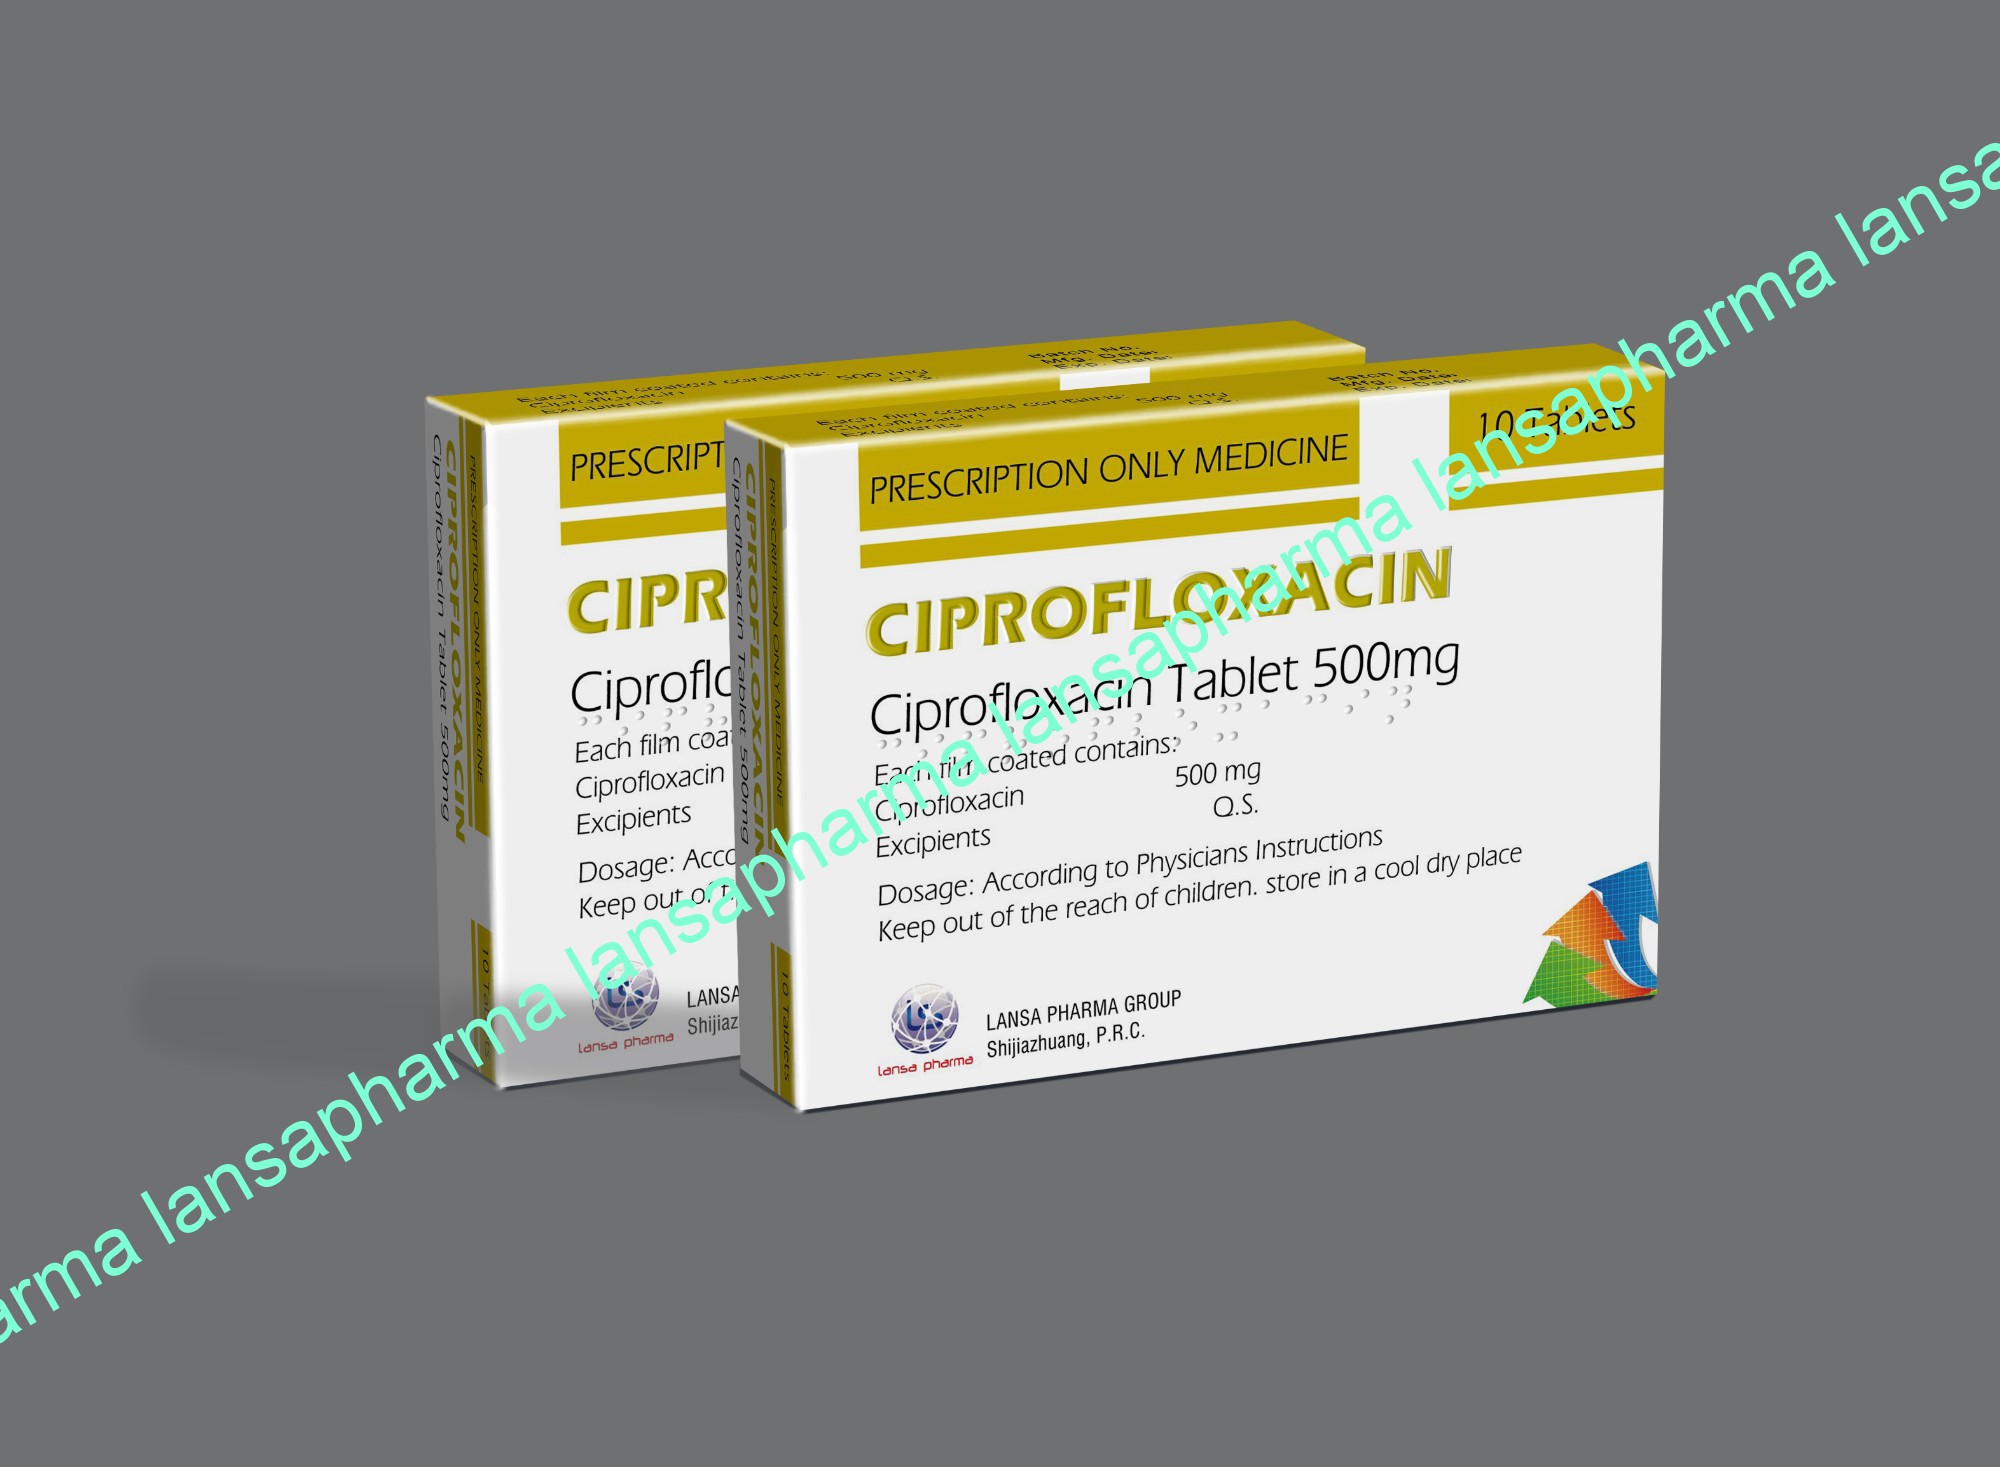 Ciprofloxacin 500 mg Tablets